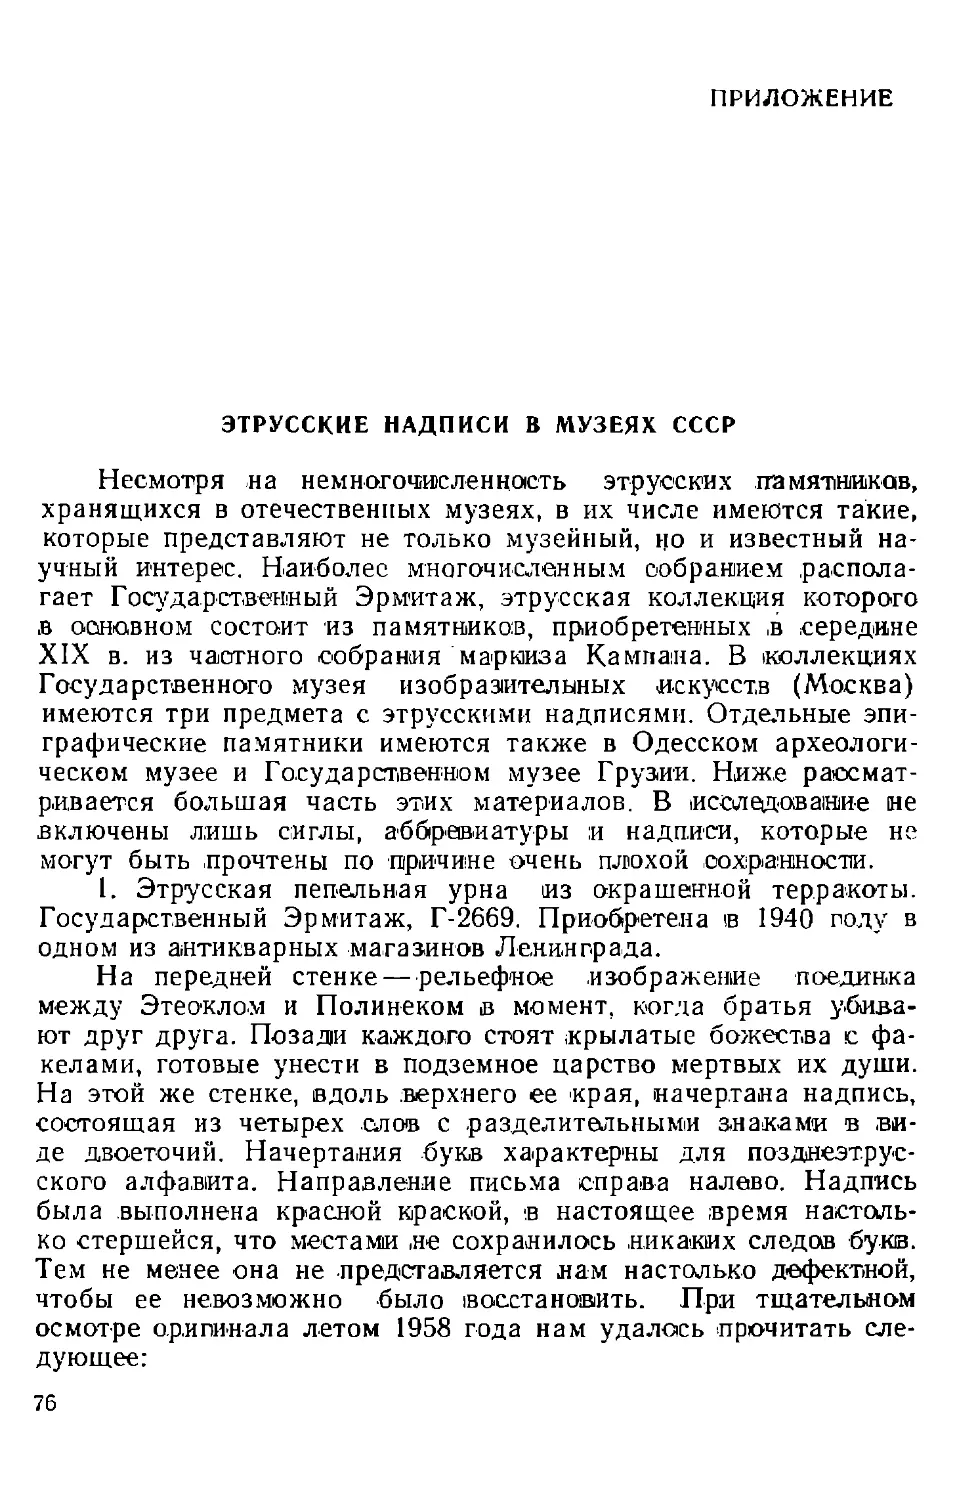 Приложение. Этрусские надписи в музеях СССР